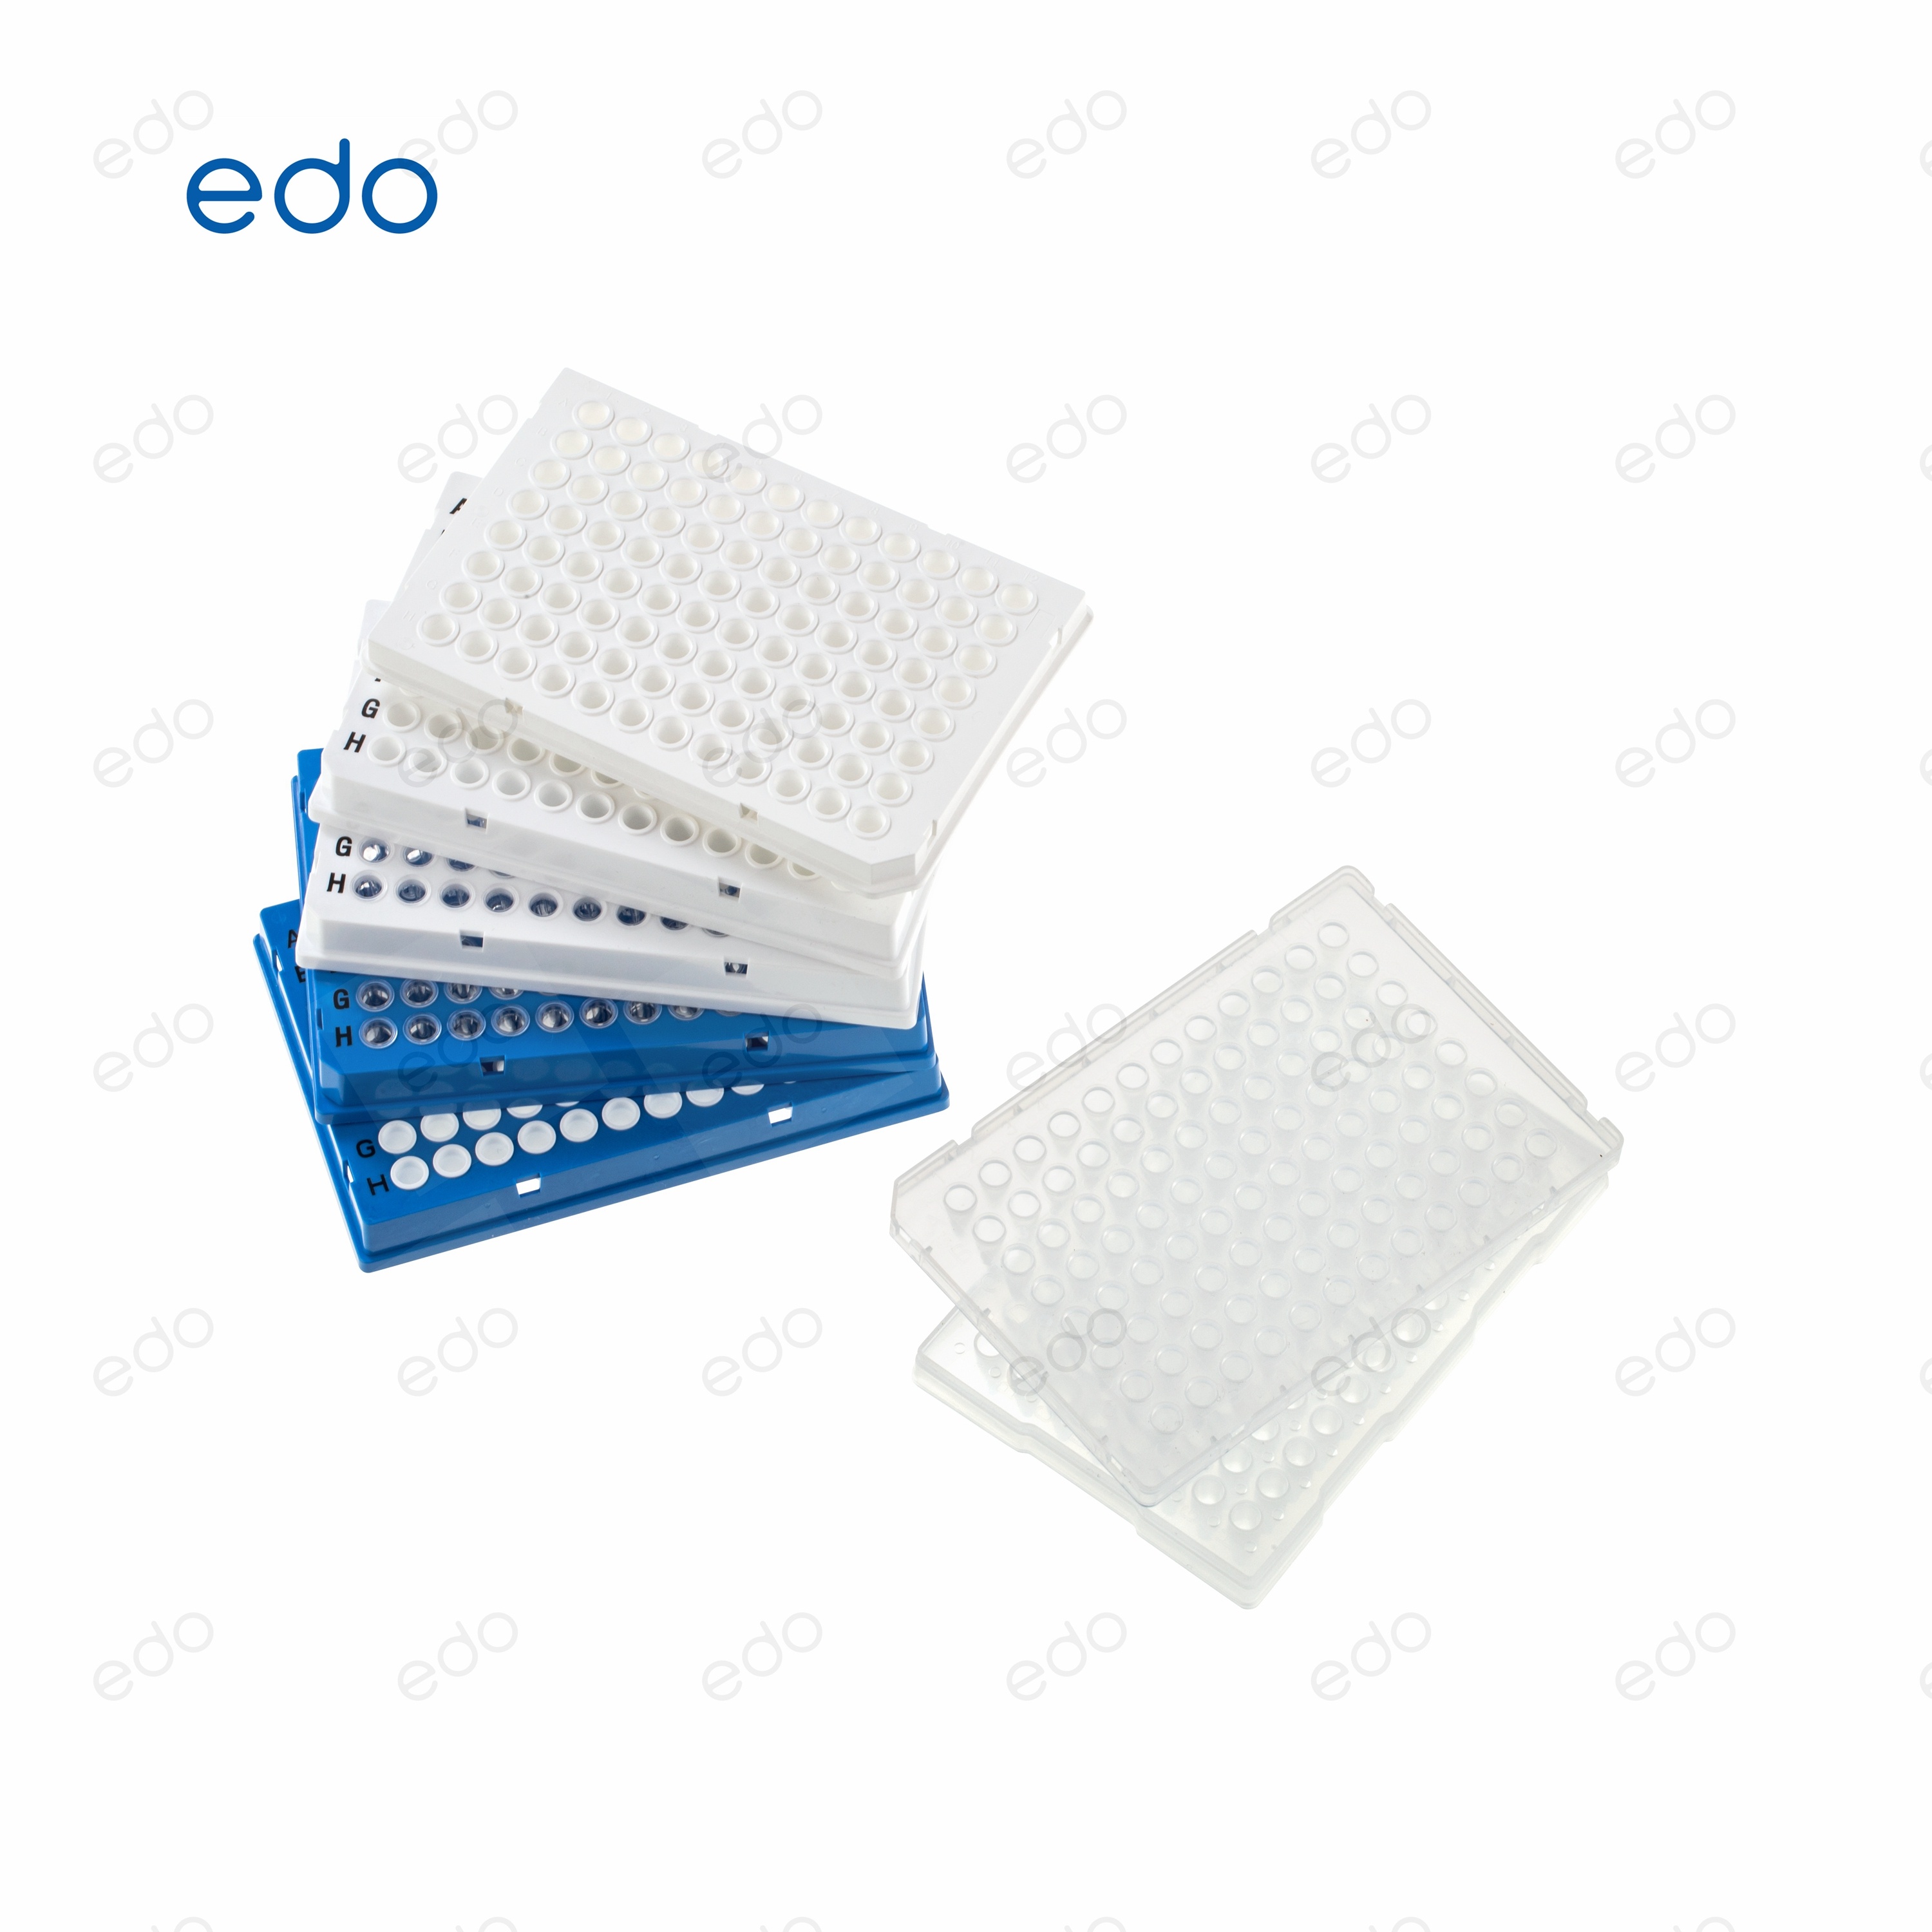 赛默飞核酸提取仪适配耗材 PCR板96孔板 ABI适配 0.1ml 1352040 10块/包、5包/箱现货可发